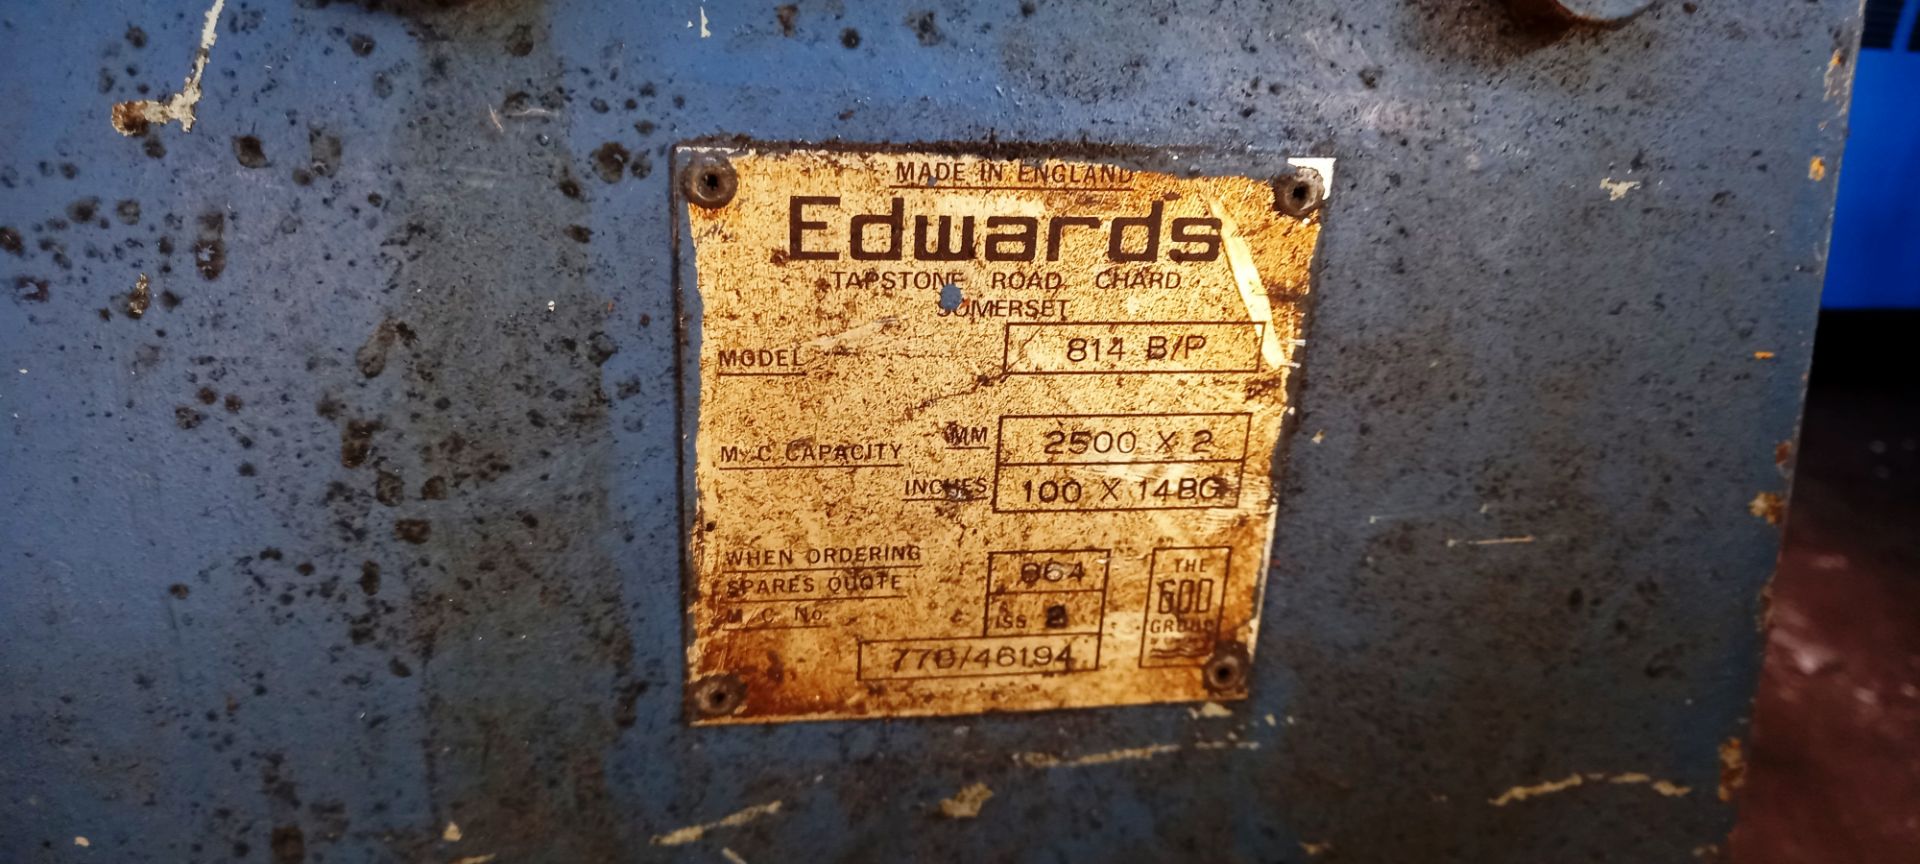 Edwards 814 Folder 2500XP serial number 770/46194, - Image 3 of 3